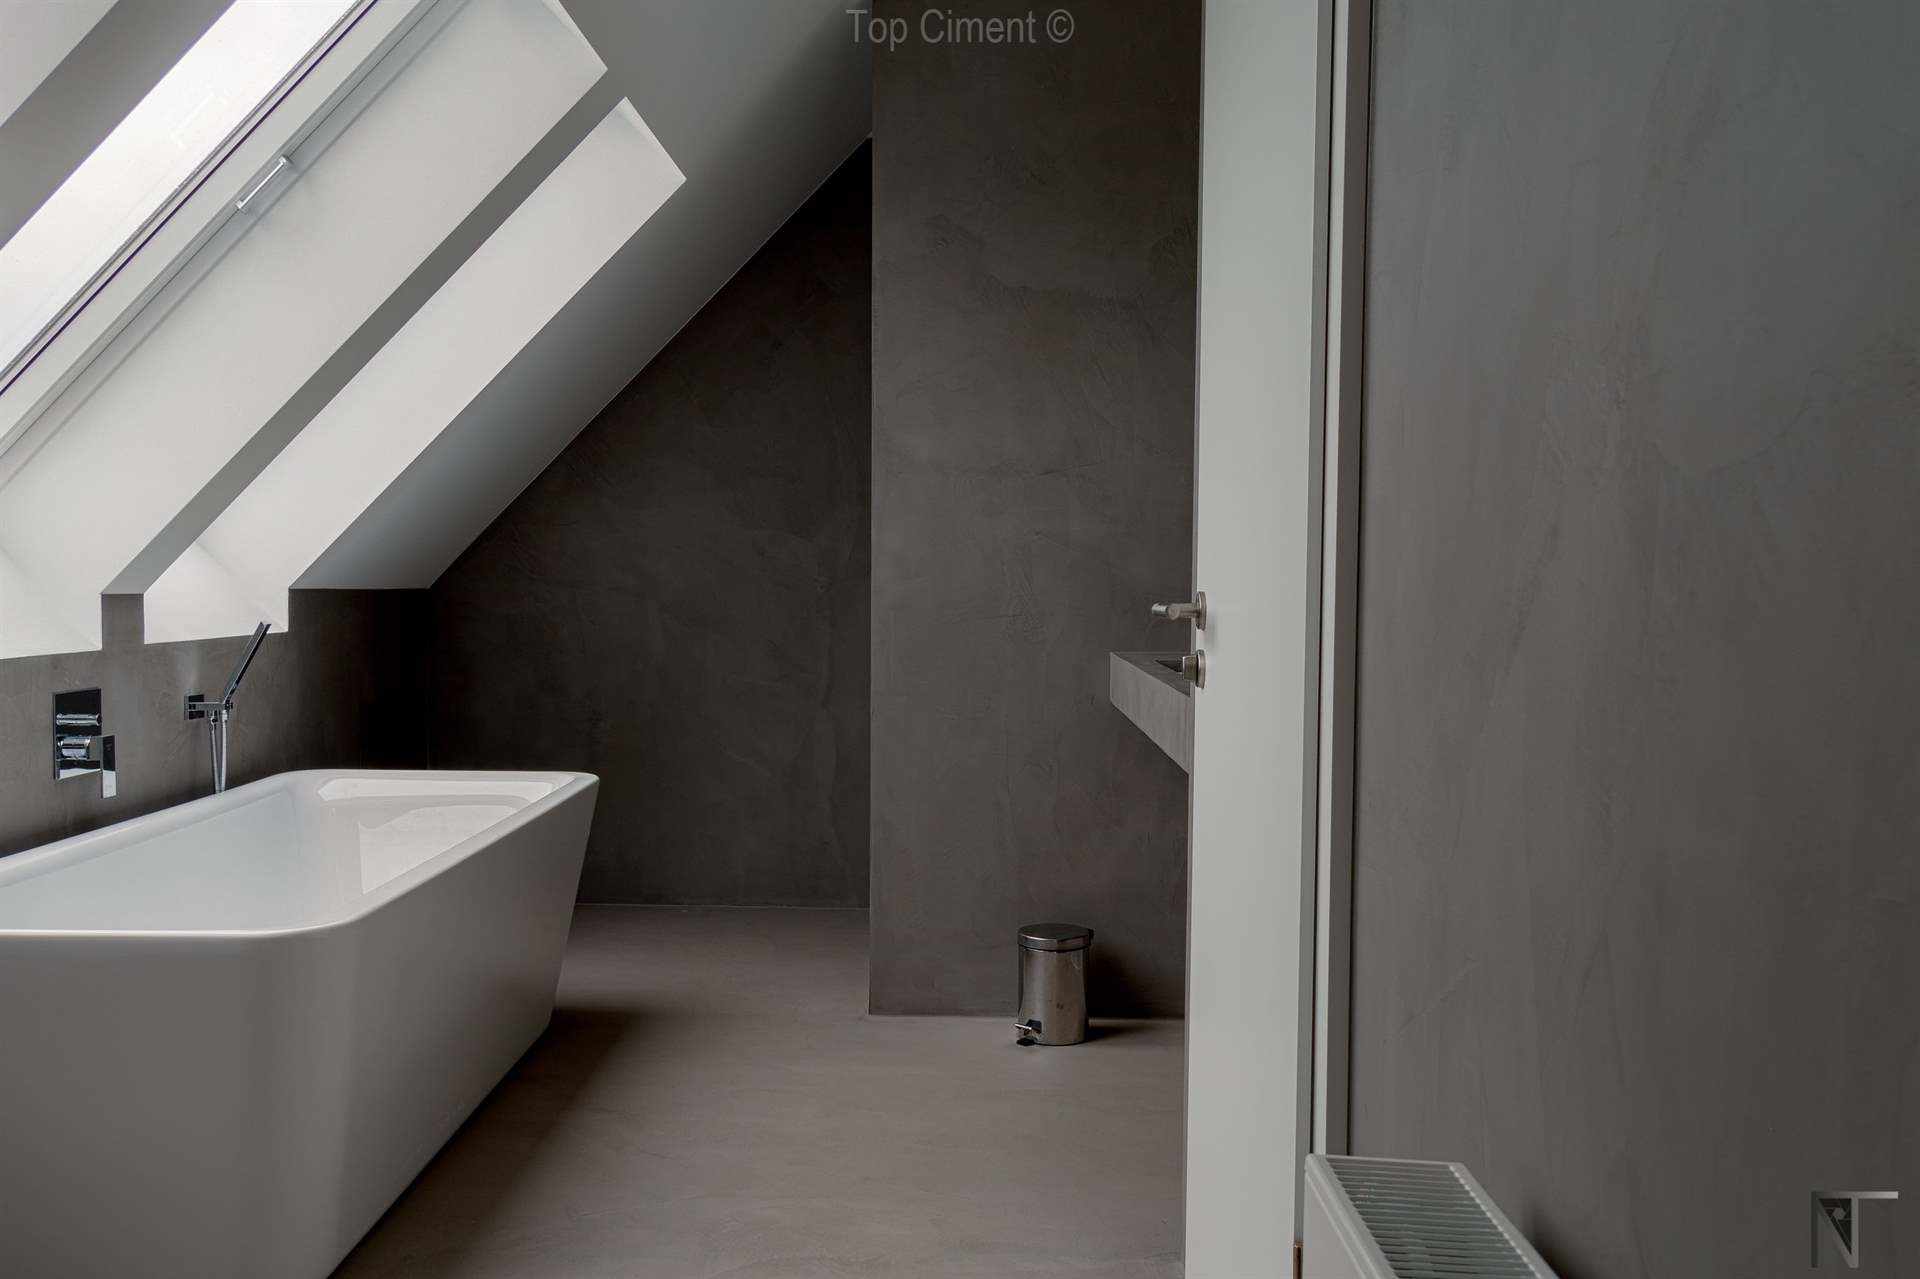 Salle de bains carrelée rénovée avec du béton ciré Microfino Topciment